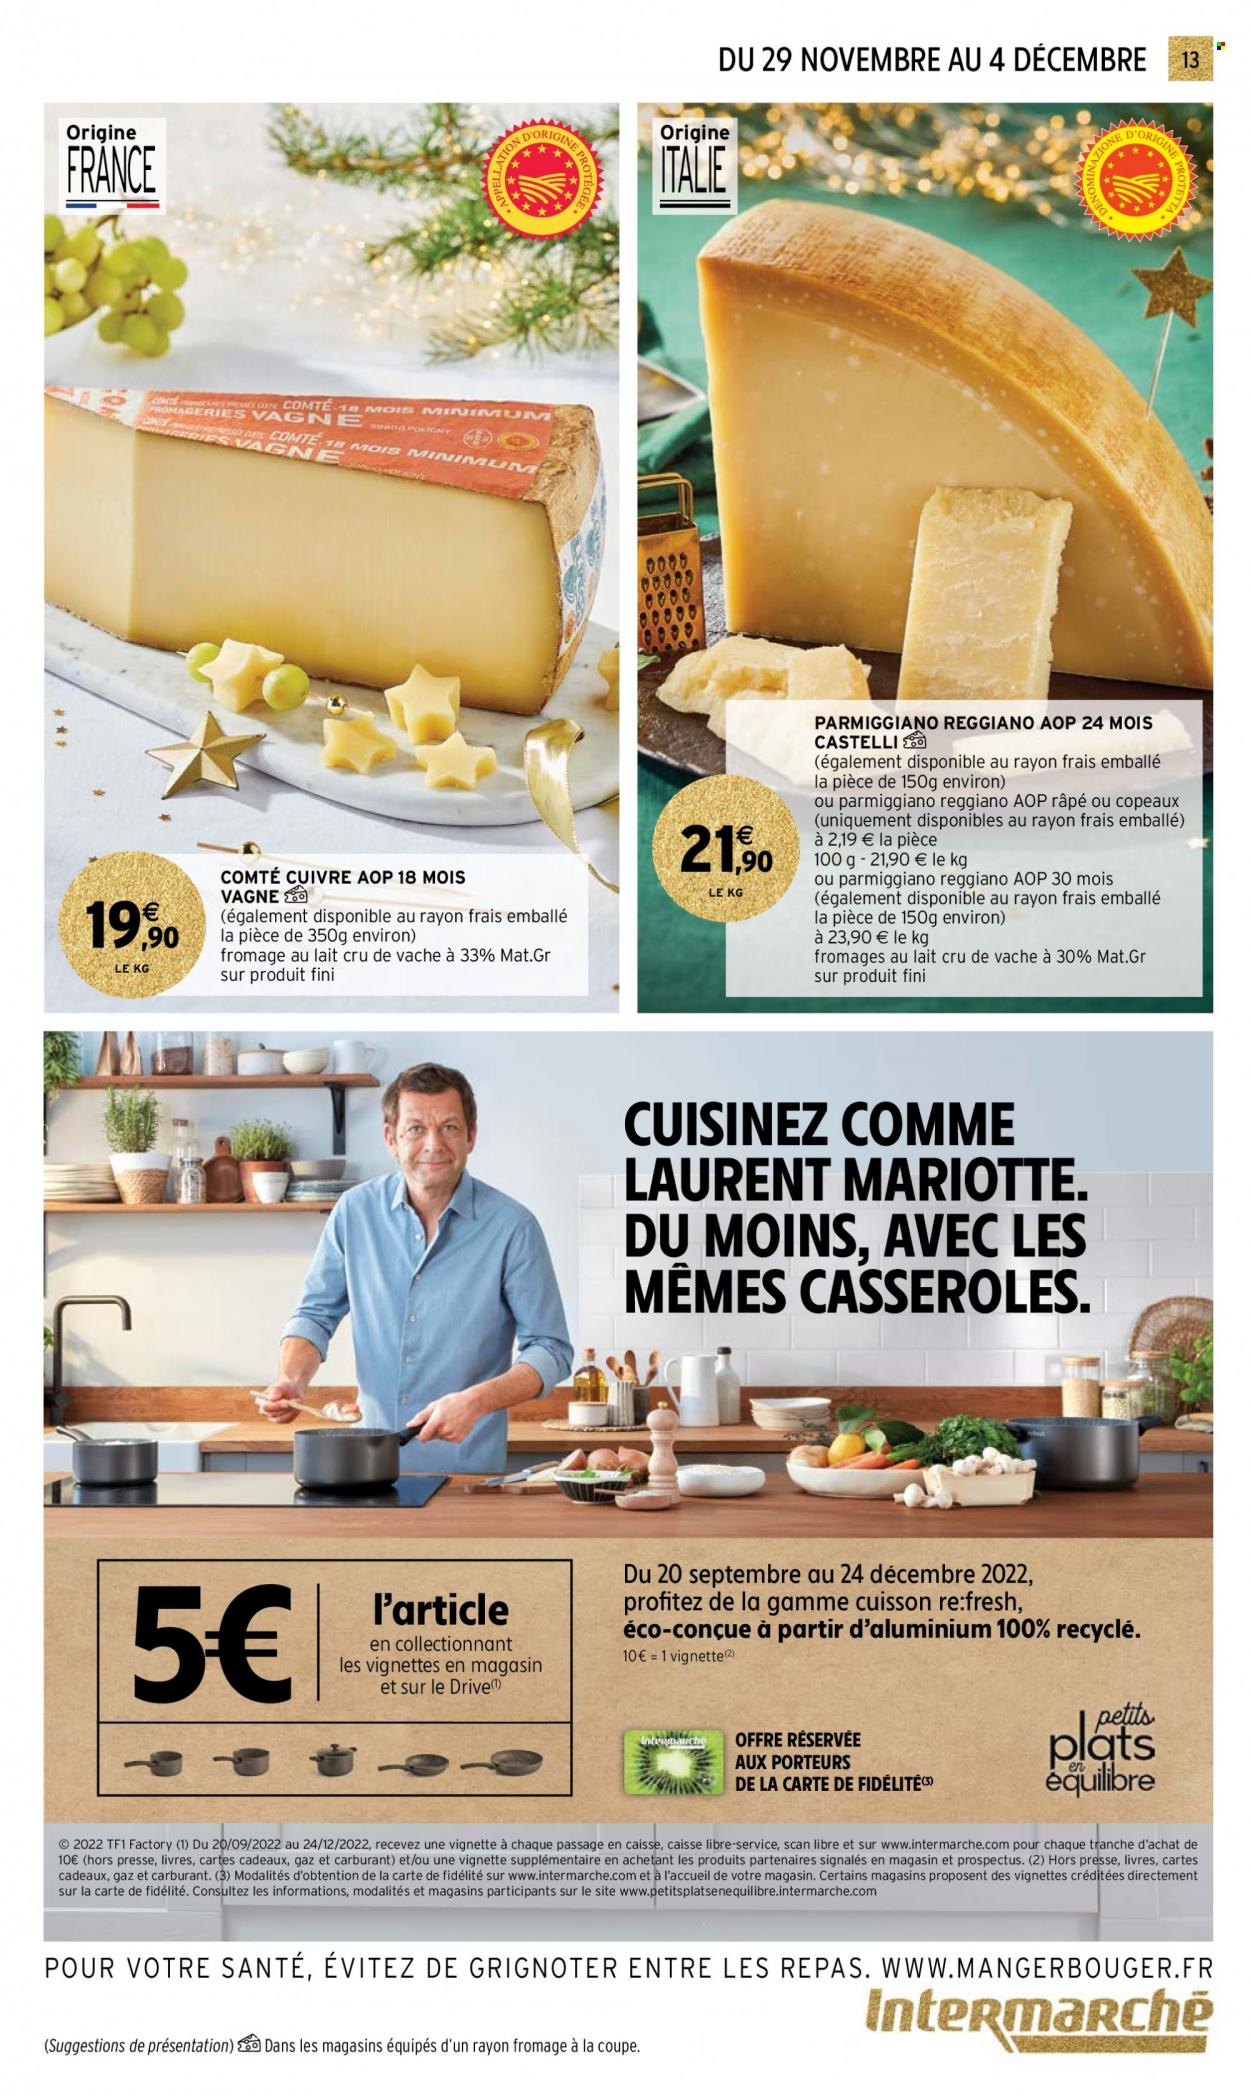 thumbnail - Catalogue Intermarché Hyper - 29/11/2022 - 04/12/2022 - Produits soldés - Comté, fromage, casserole. Page 13.